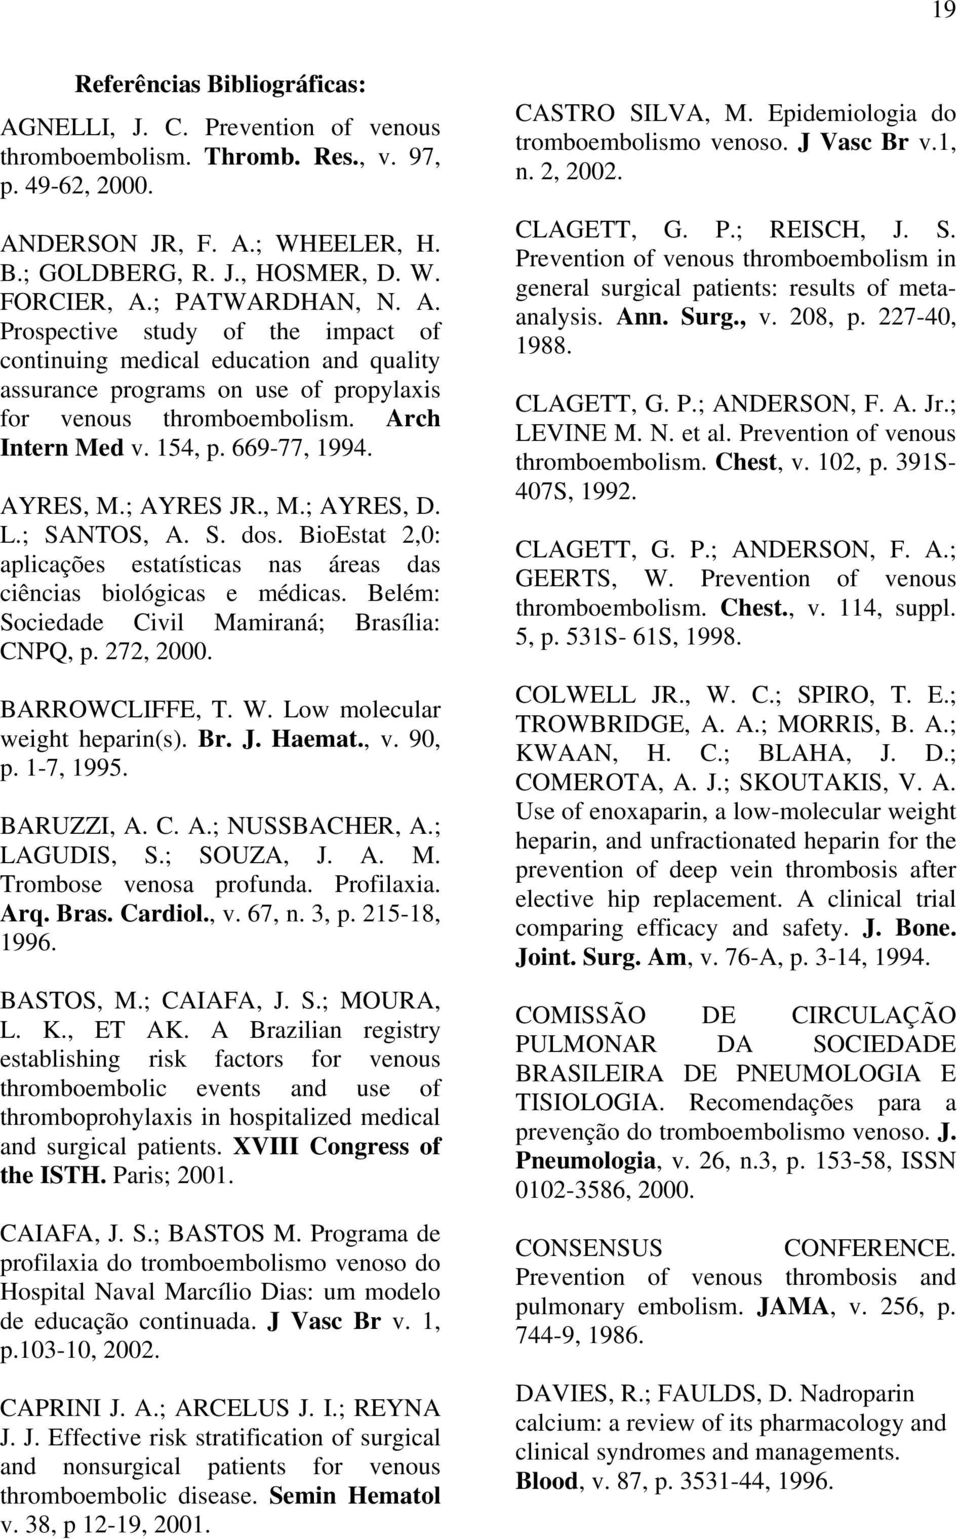 669-77, 1994. AYRES, M.; AYRES JR., M.; AYRES, D. L.; SANTOS, A. S. dos. BioEstat 2,0: aplicações estatísticas nas áreas das ciências biológicas e médicas.